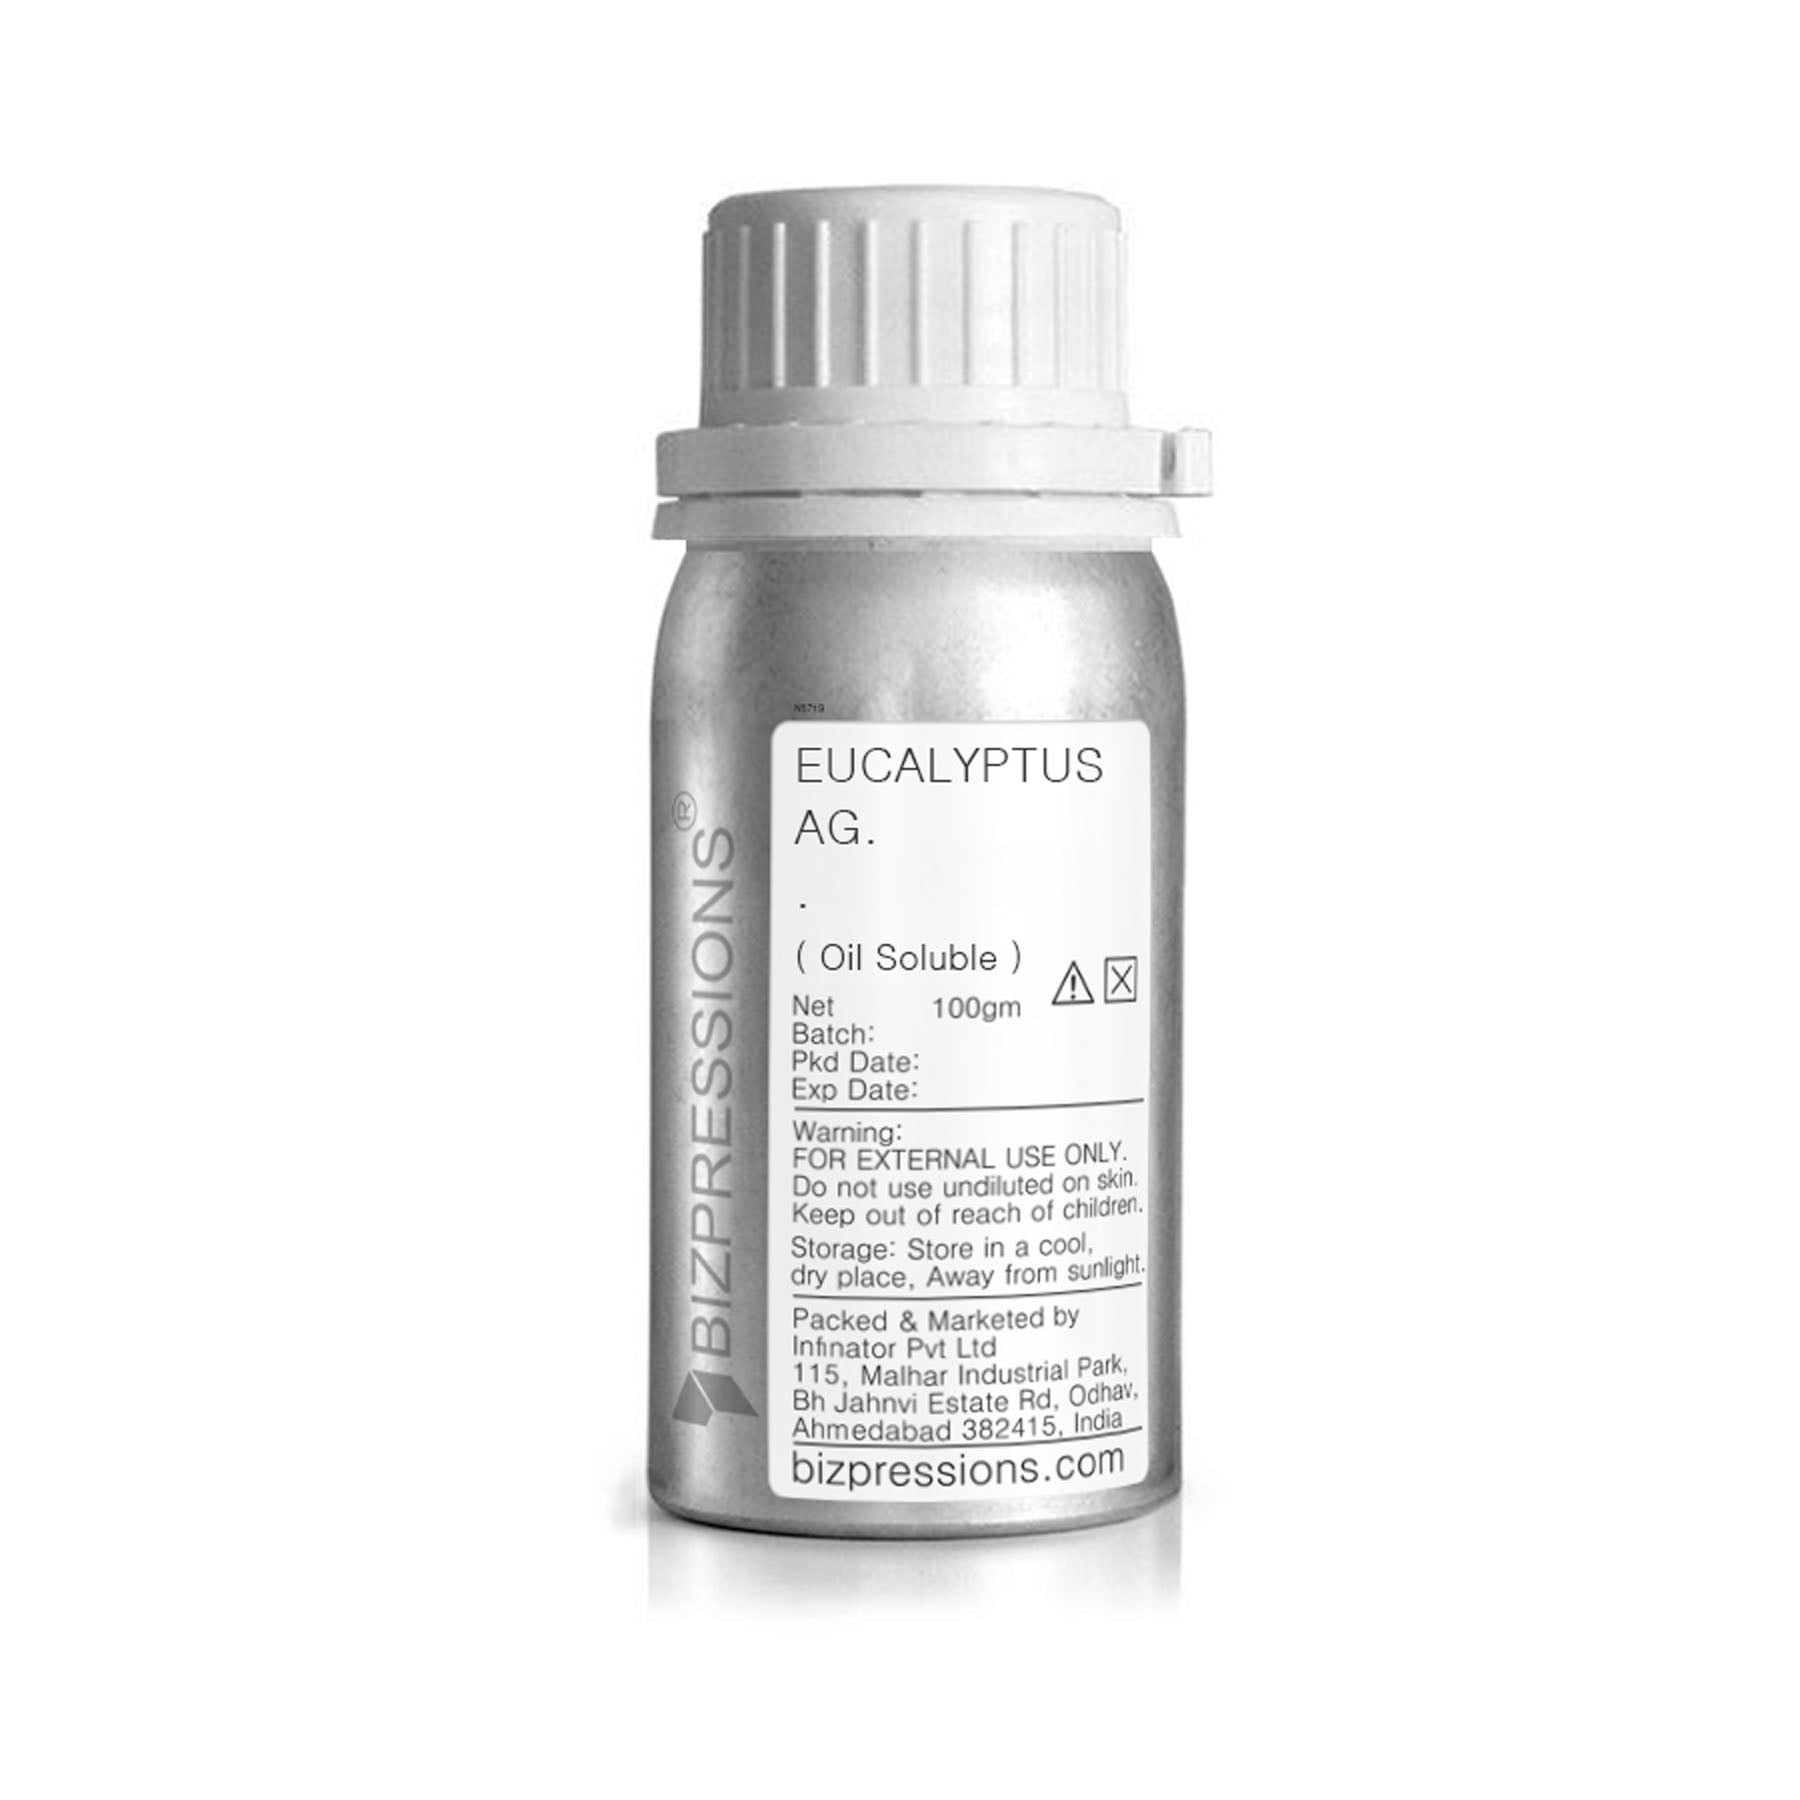 EUCALYPTUS AG. - Fragrance ( Oil Soluble ) - 100 gm